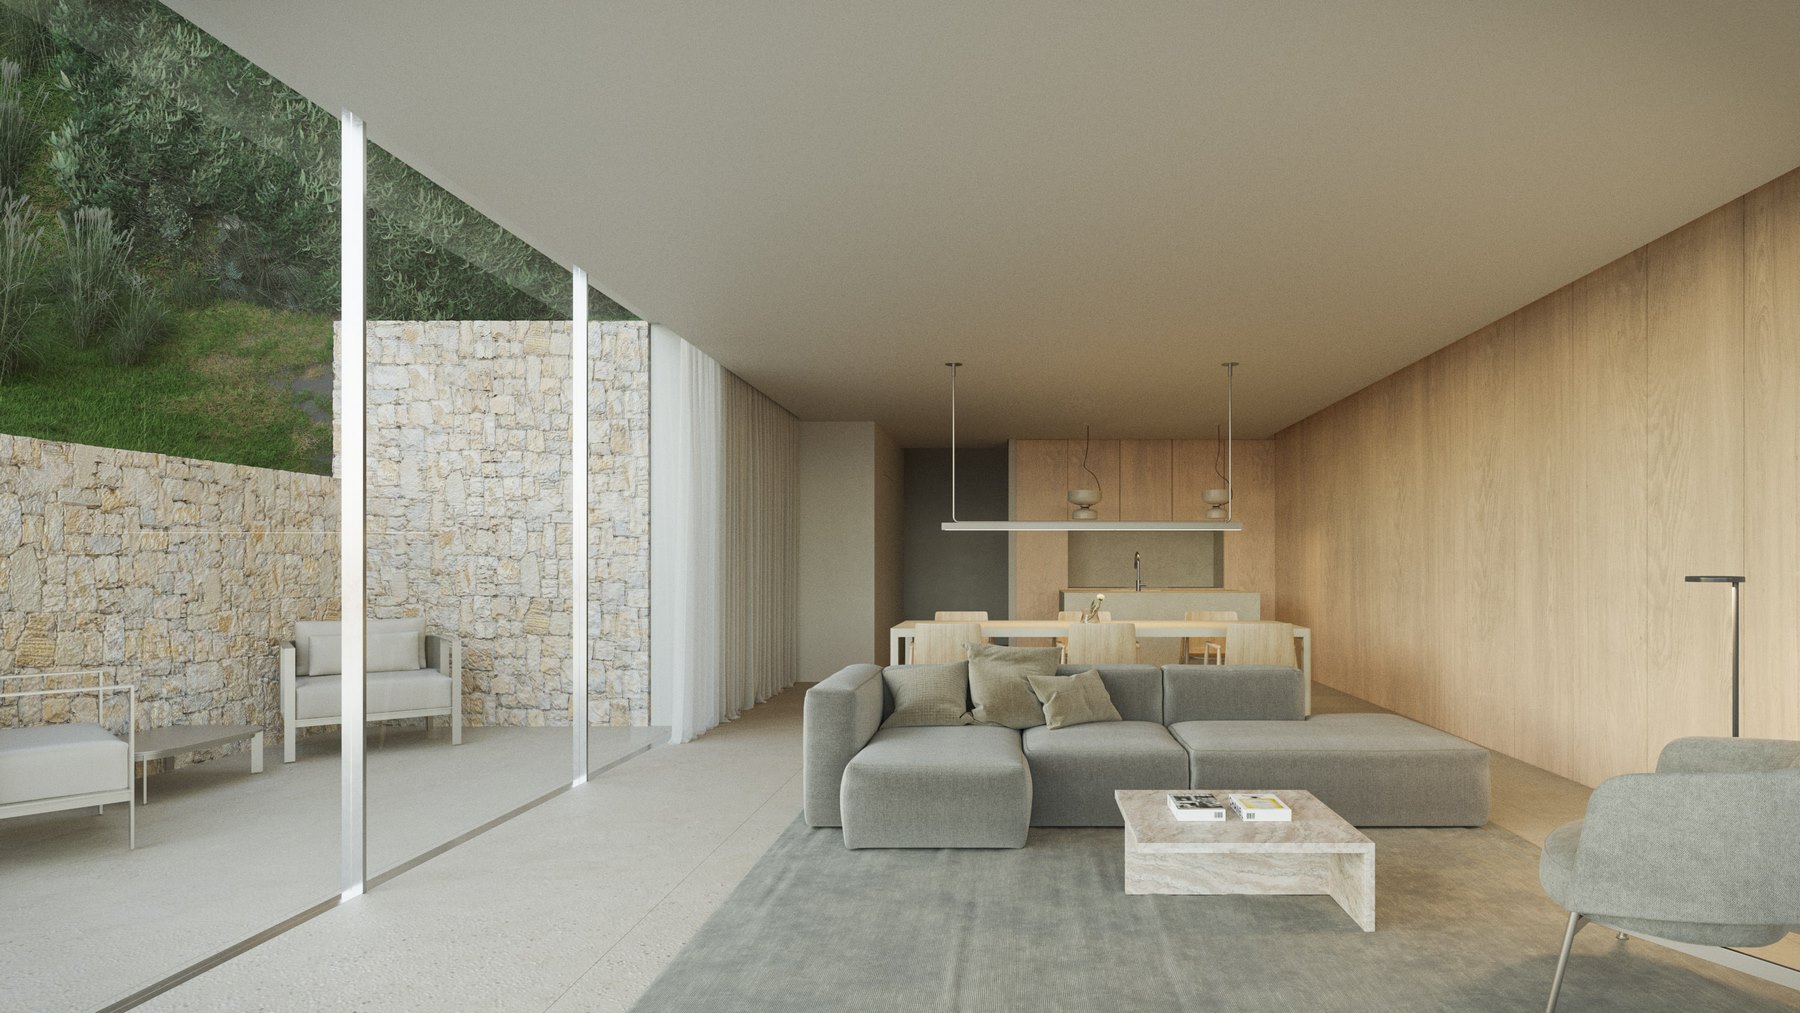 Moderne nieuwbouwvilla met panoramisch uitzicht op zee te koop in Benissa